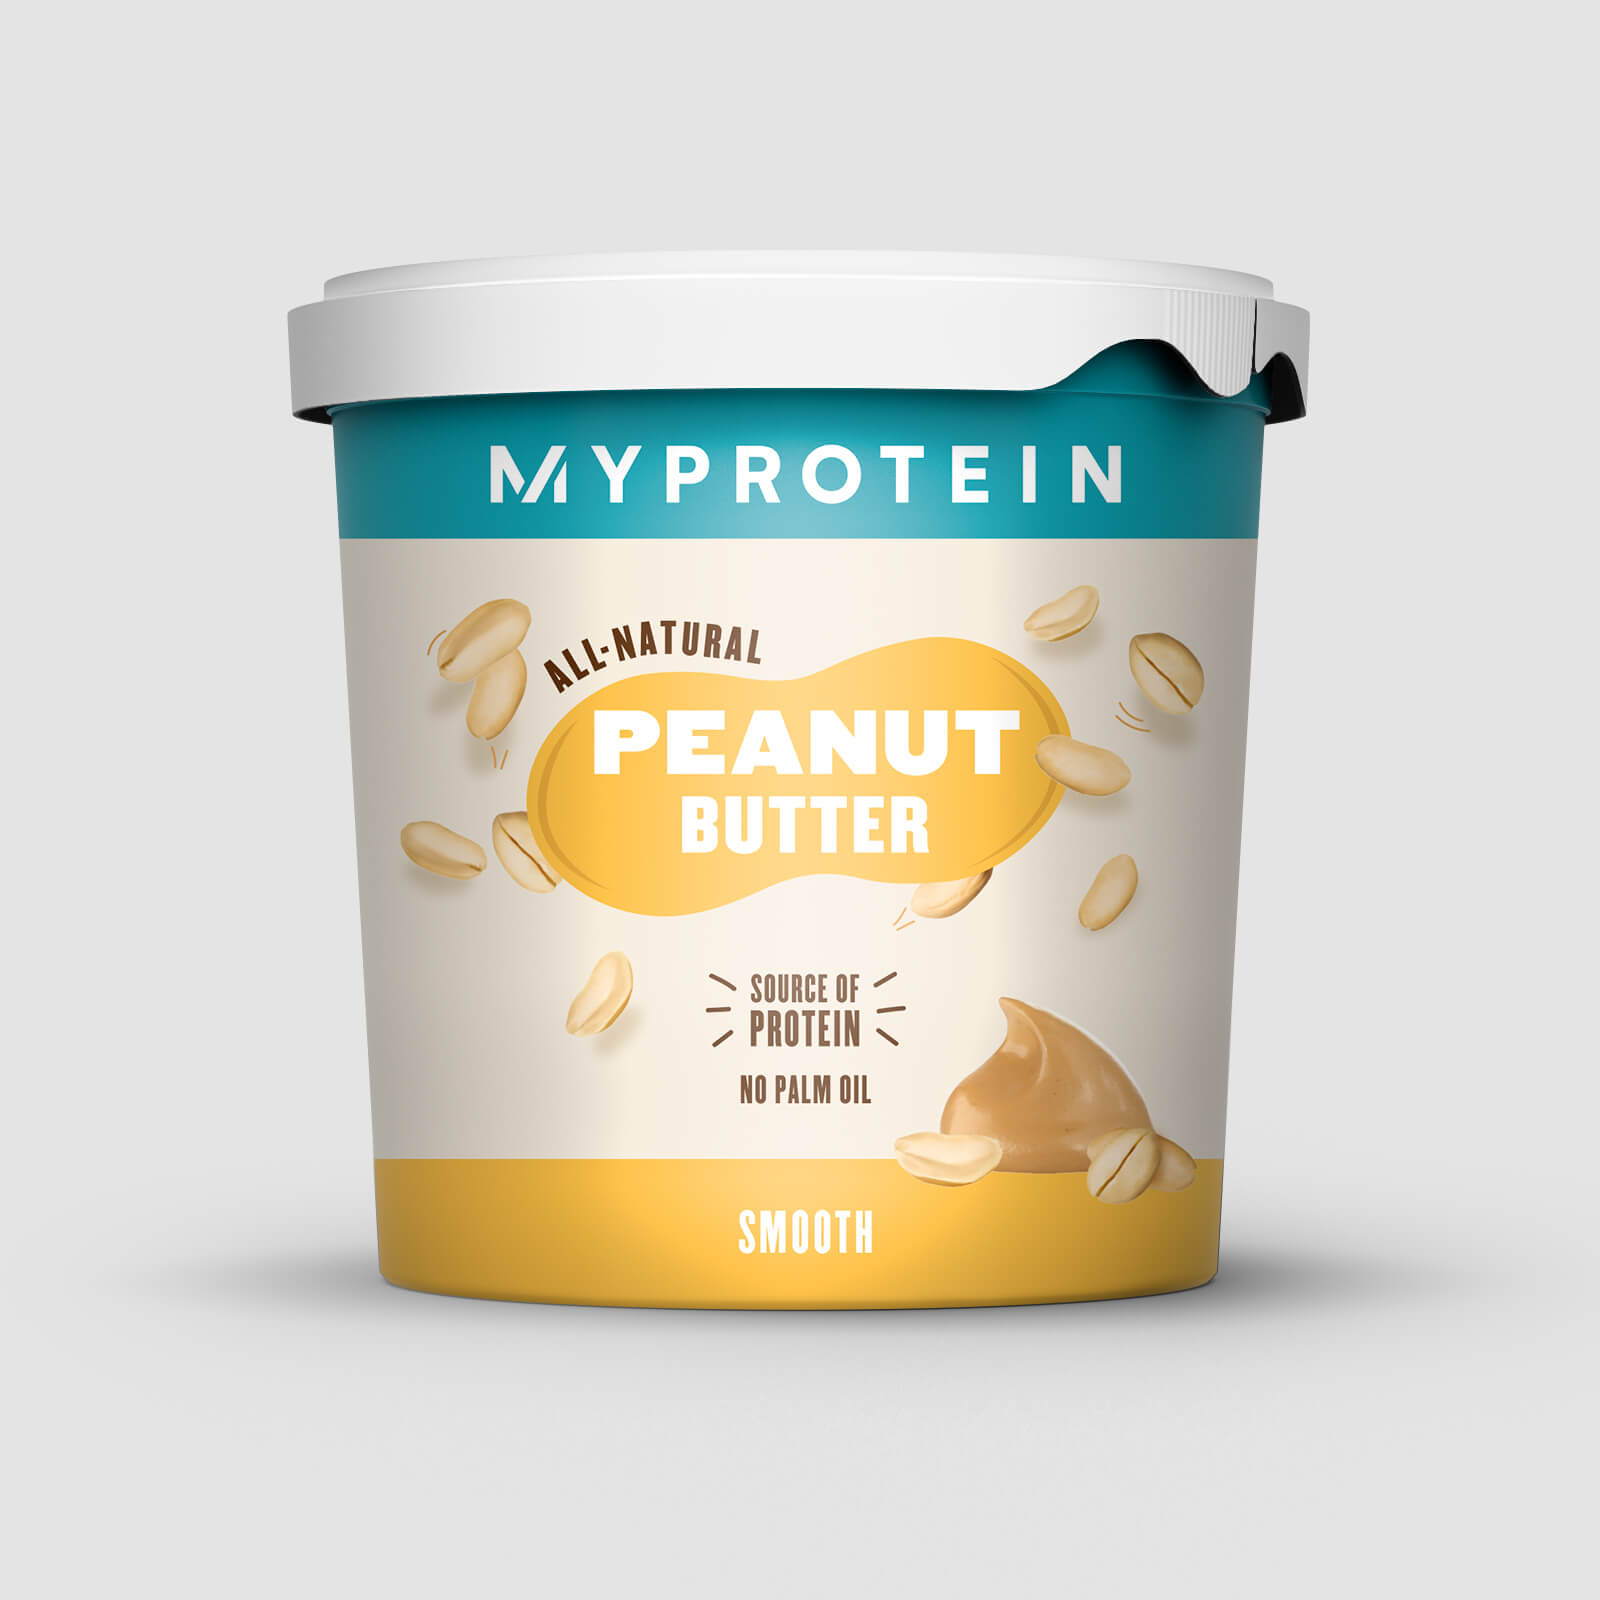 Myprotein Manteiga de amendoim 100% natural - Original - Suave